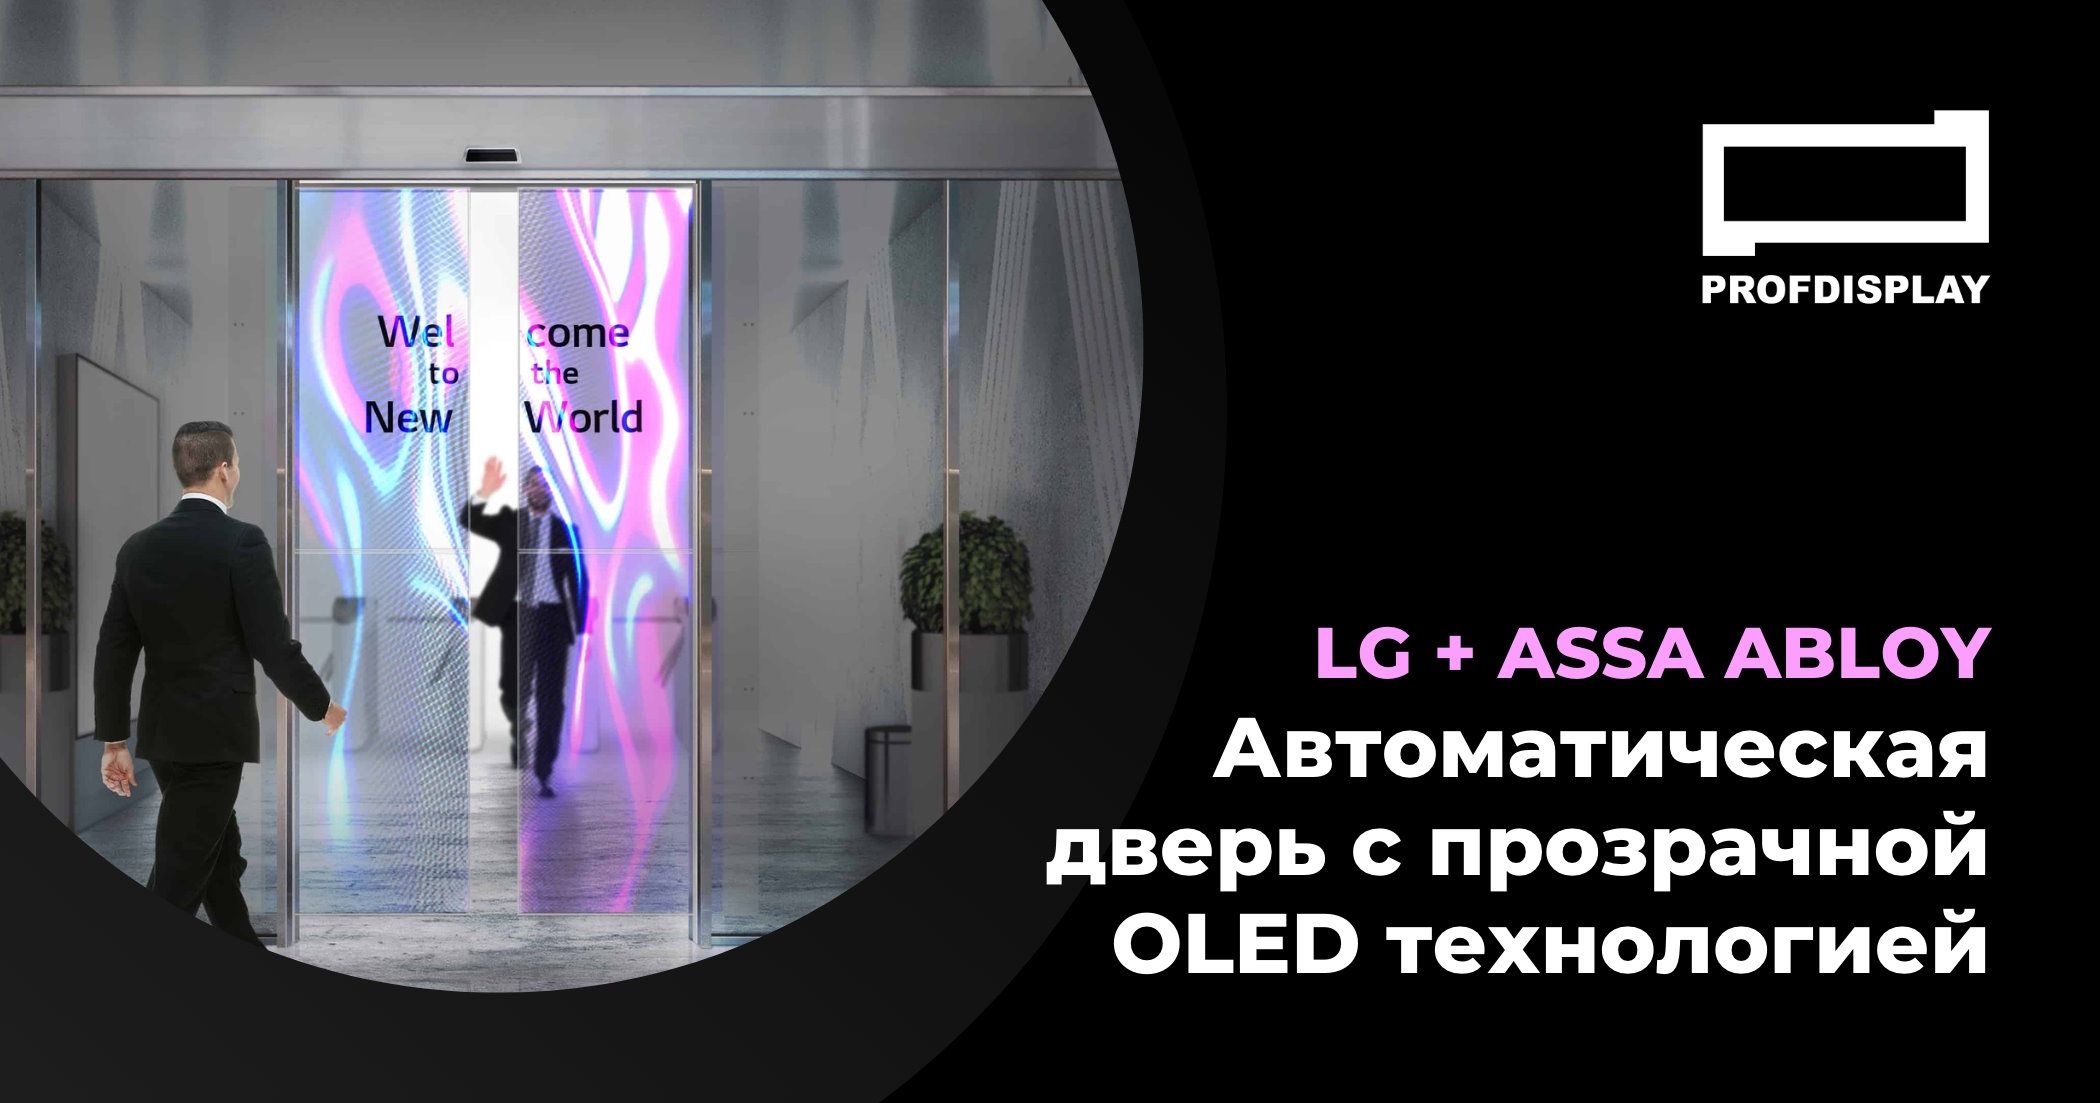 Компания LG совместно с шведским производителем ASSA ABLOY Entrance Systems создали прозрачную автоматическую дверь